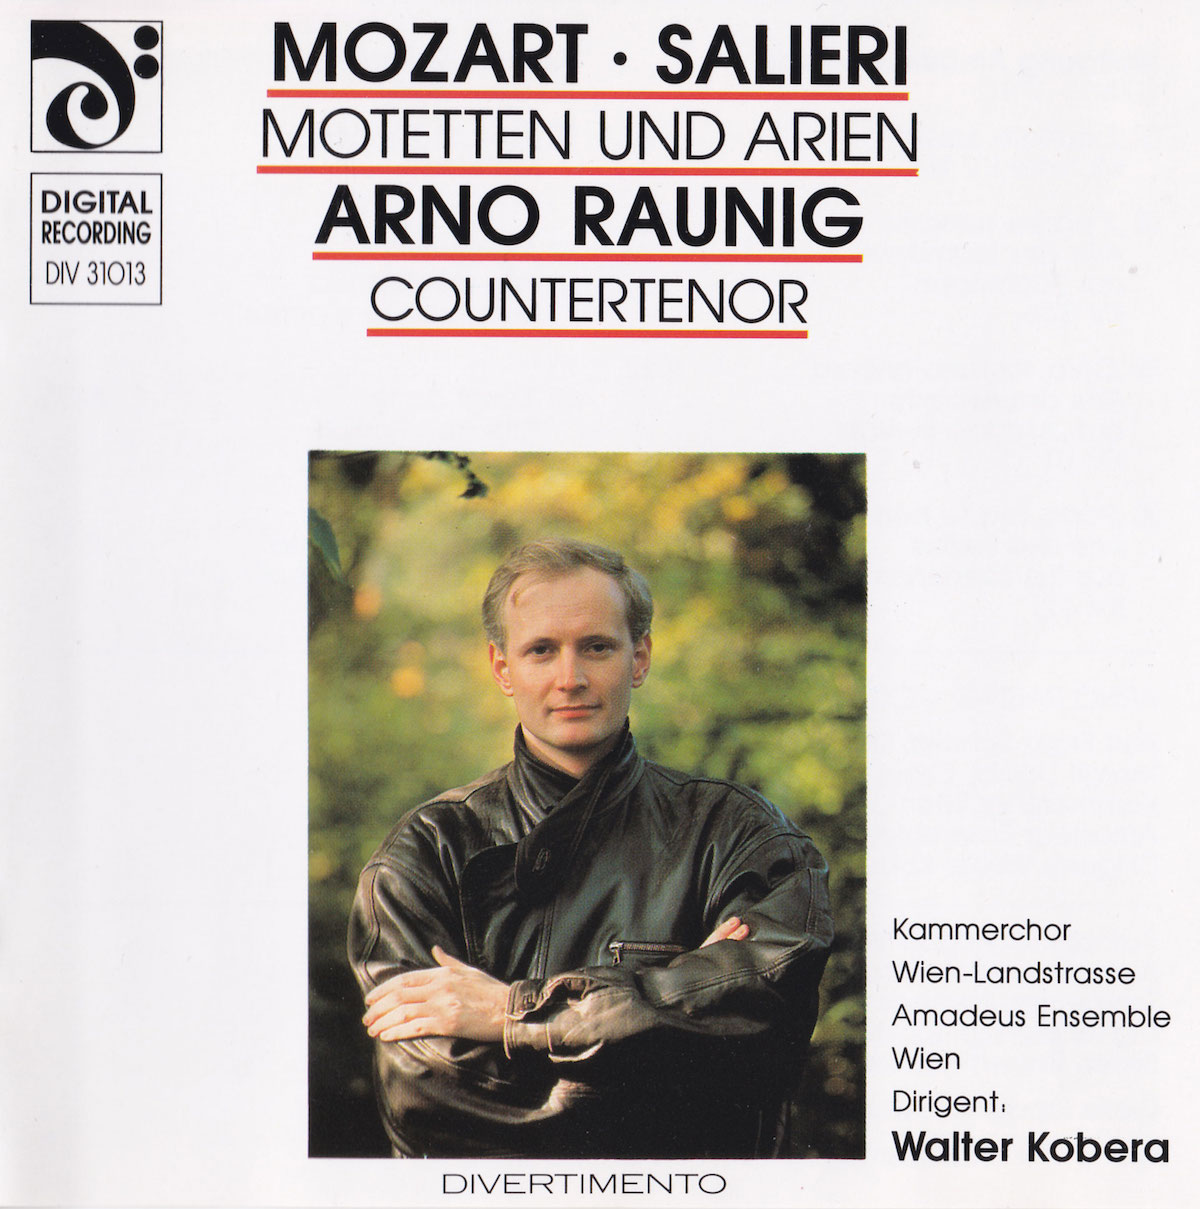 Mozart Salieri Arno Raunig